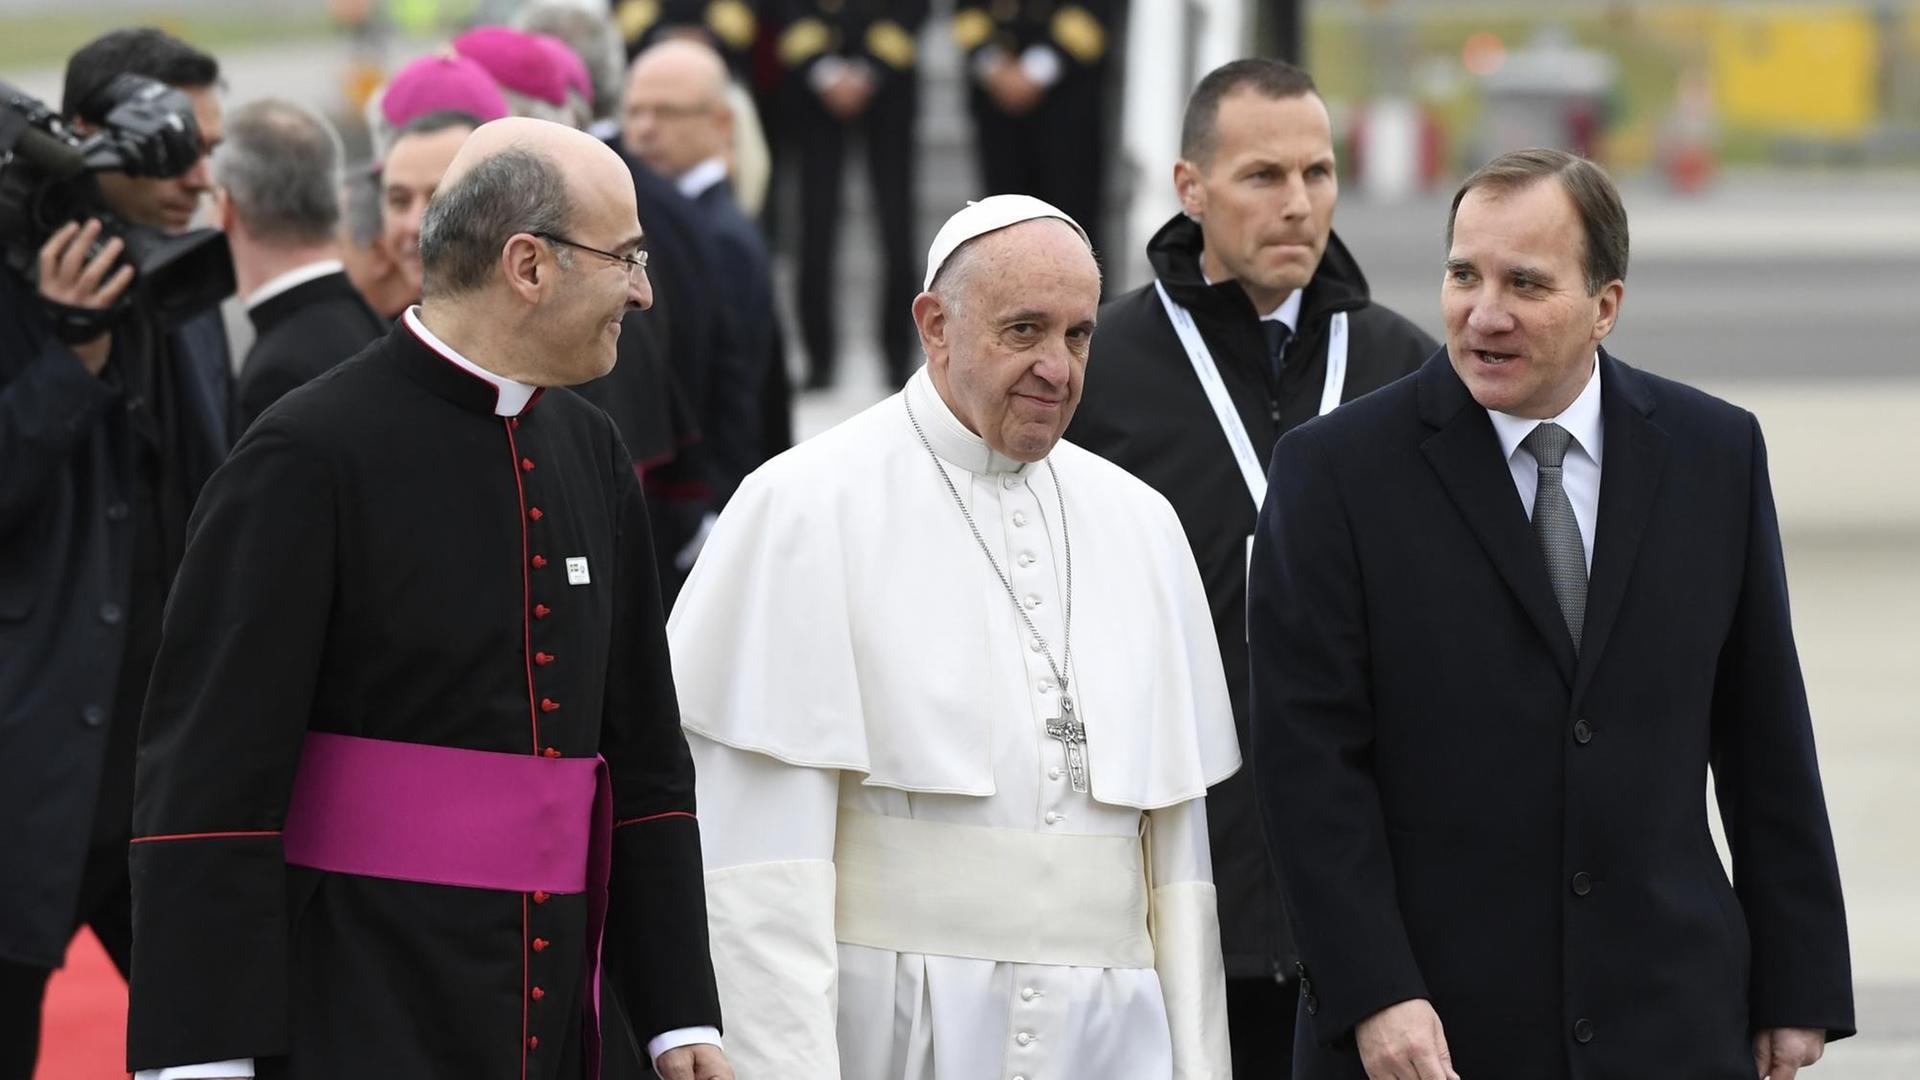 Papst Franziskus geht zwischen einem hohen katholischen Geistlichen (links) und Schwedens Premierminister Stefan Loefven.